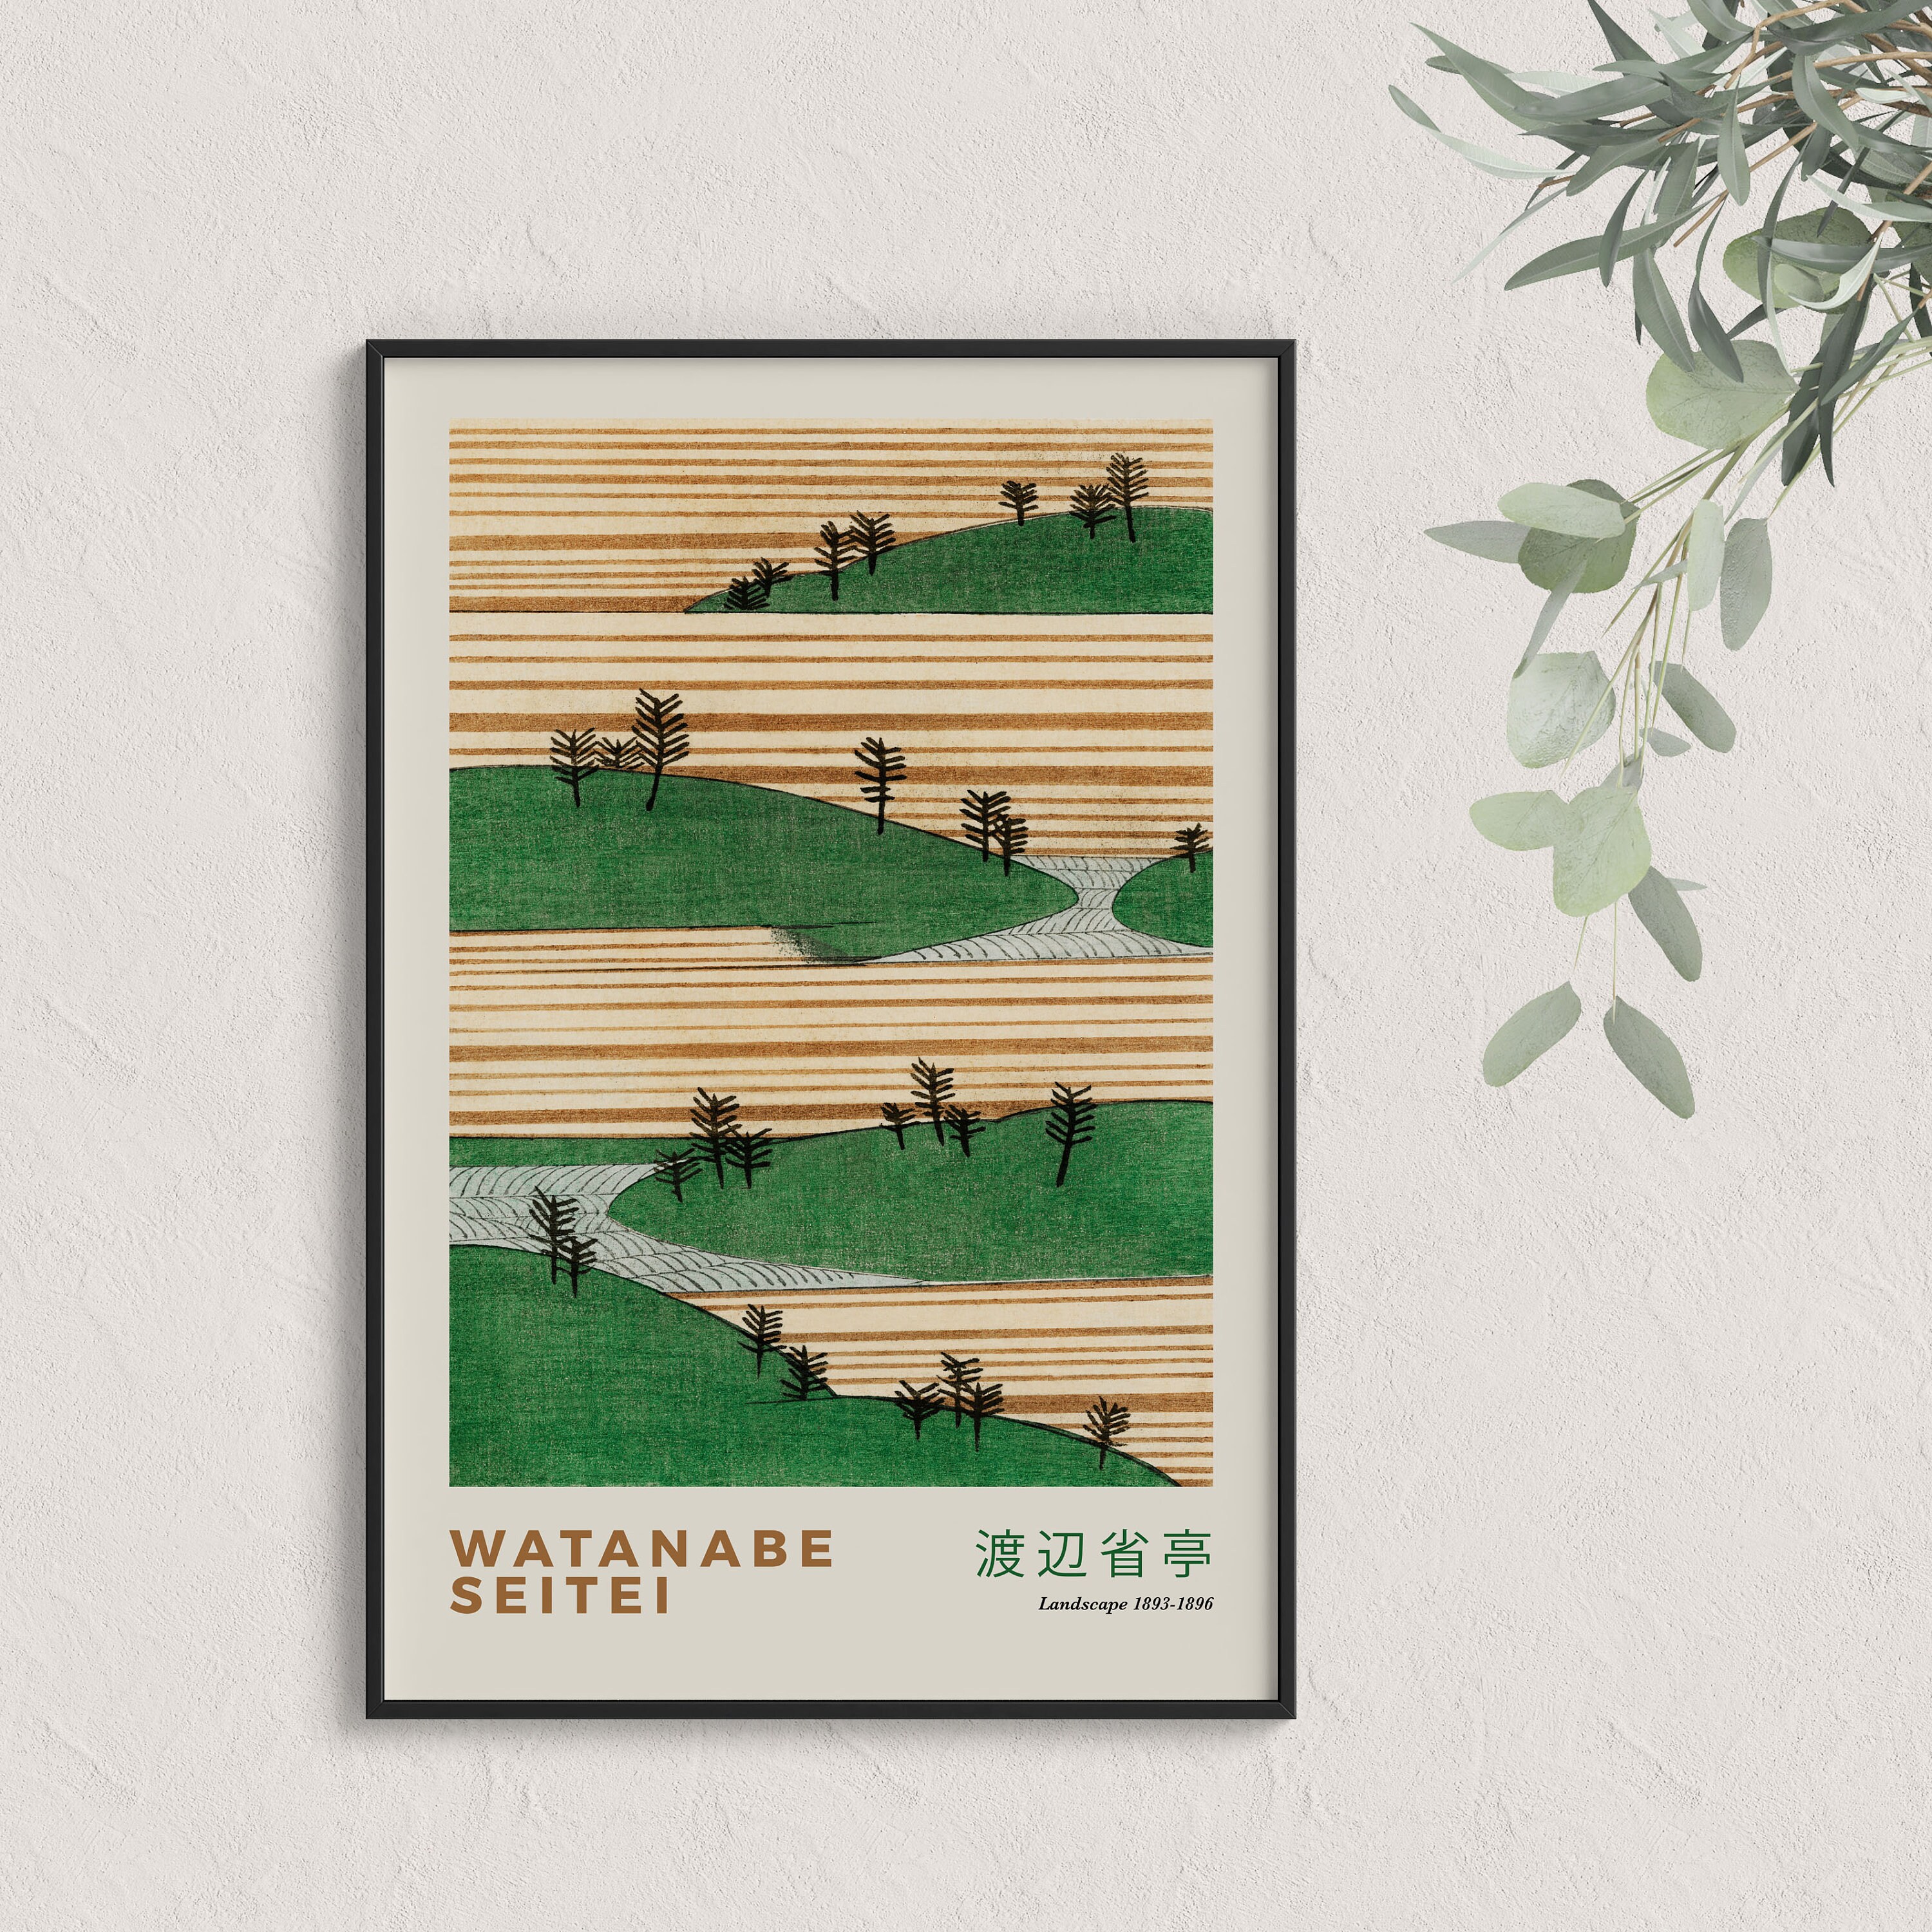 Yuta Watanabe Basketball Design Poster Nets - Yuta Watanabe - Posters and  Art Prints